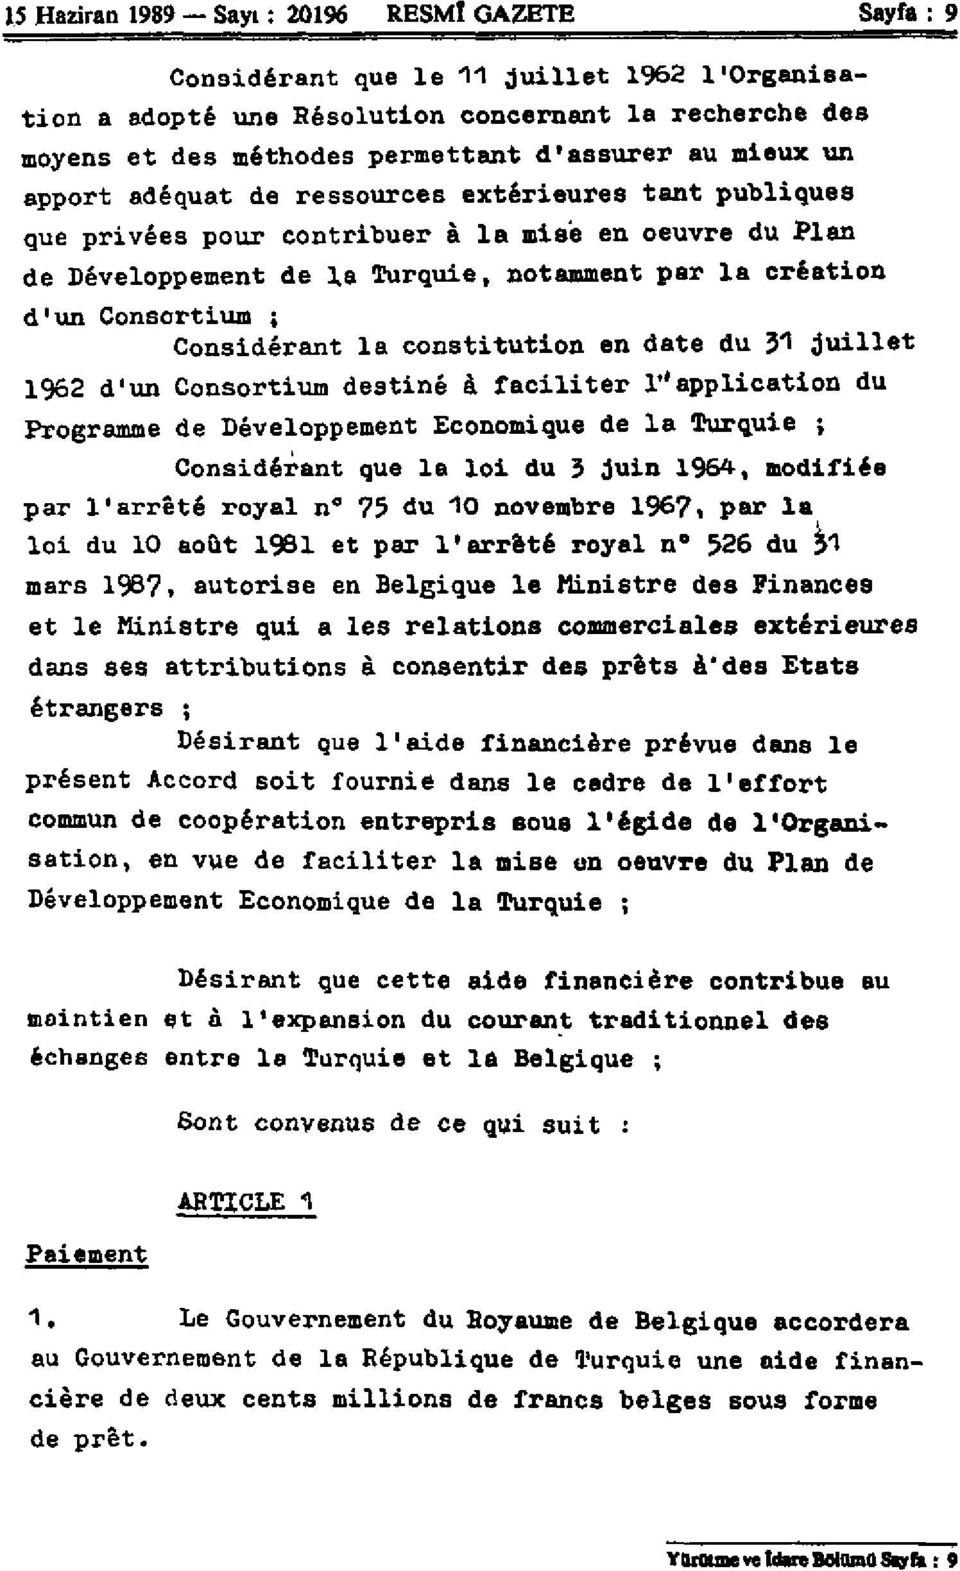 Considérant la constitution en date du y\ juillet 1962 d'un Consortium destiné à faciliter Inapplication du Programme de Développement Economique de la Turquie ; Considérant que la loi du 3 juin